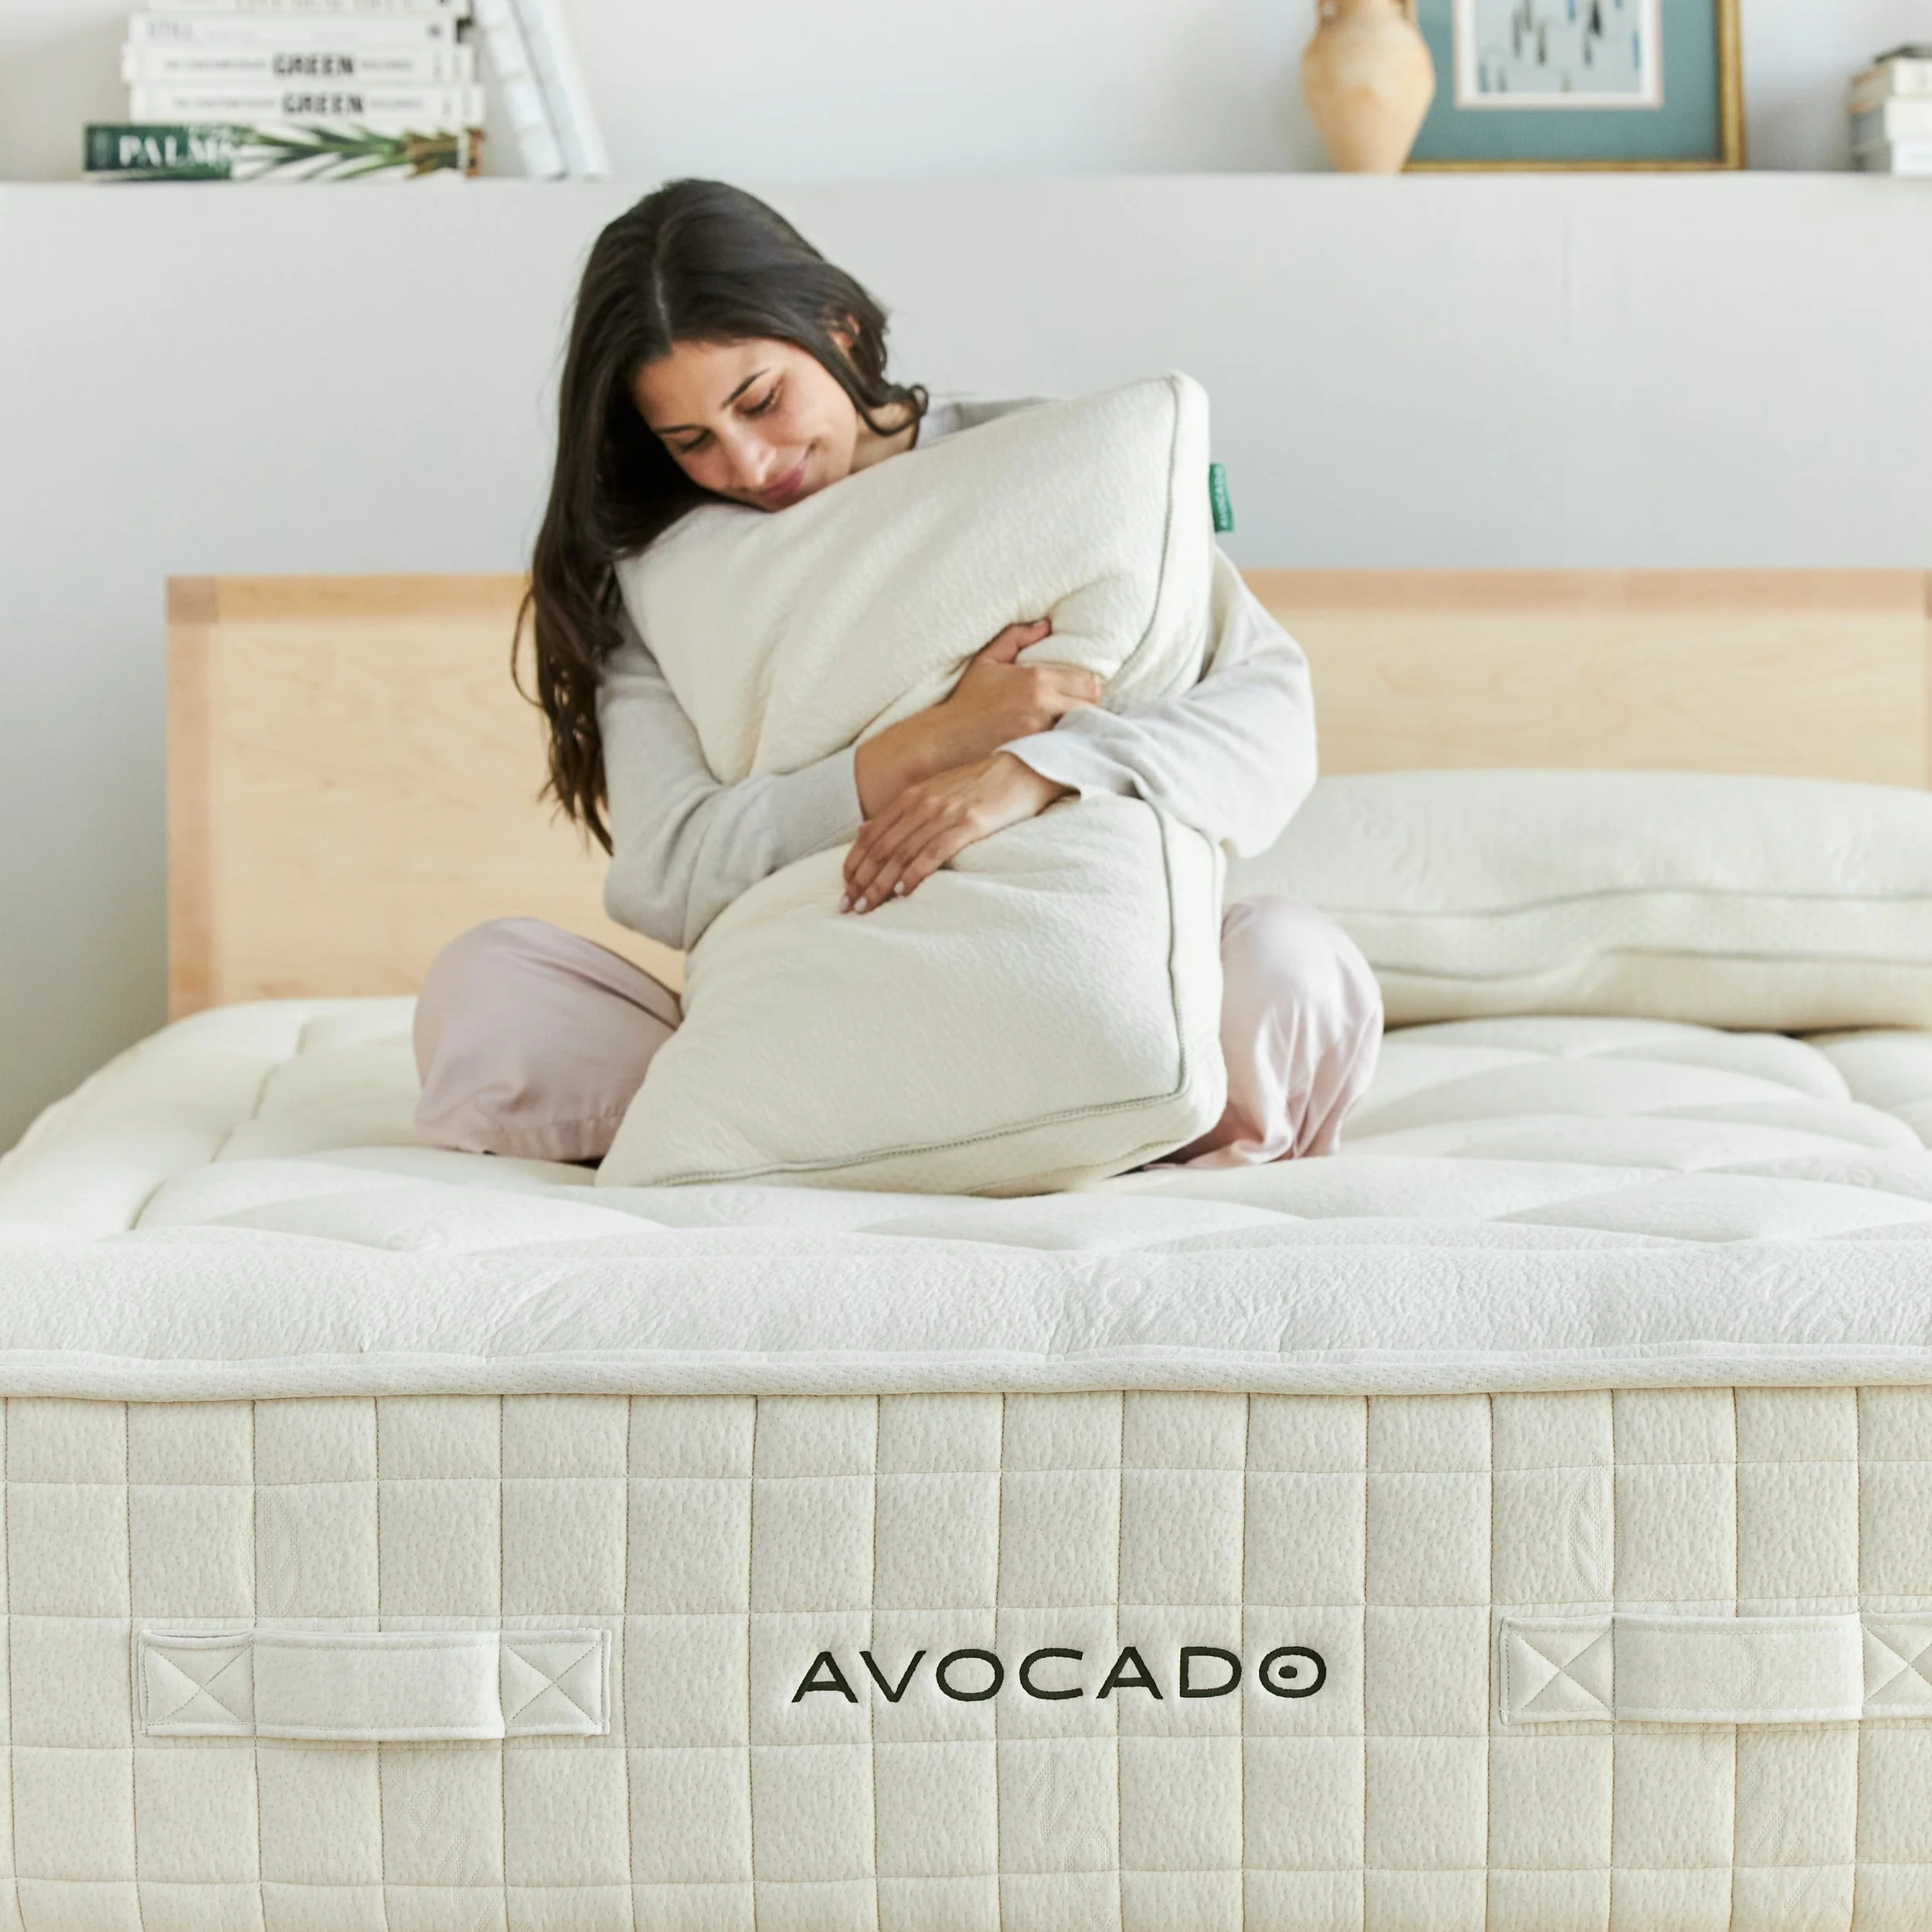 Organic cotton mattress for sustainable sleep